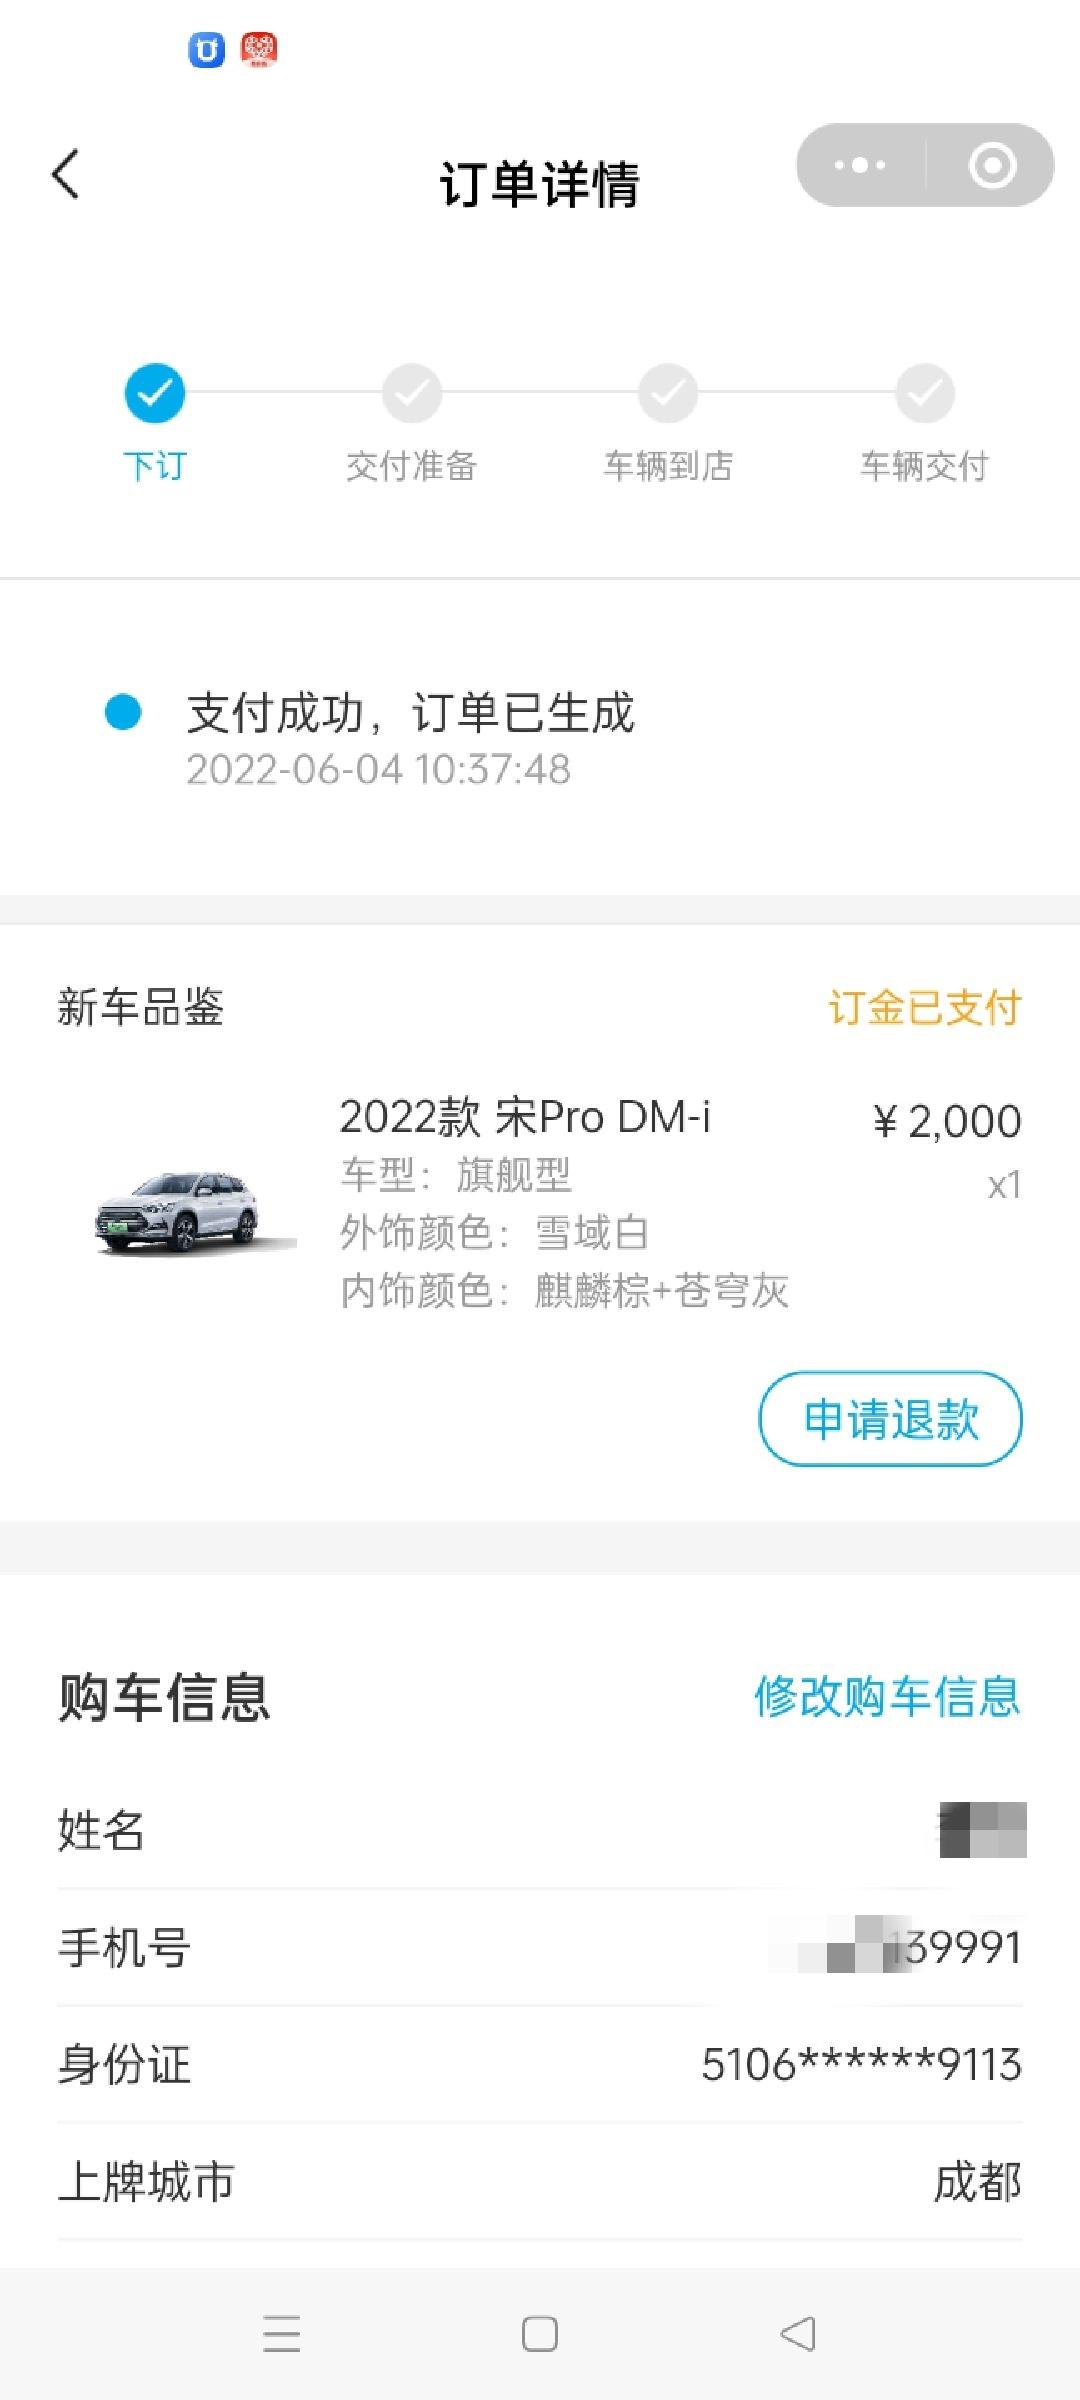 昨天已定宋Pro DM-i 110KM旗舰型，裸车价15.58，保险6000，上牌1000，不议价，不能自己上牌，买保险